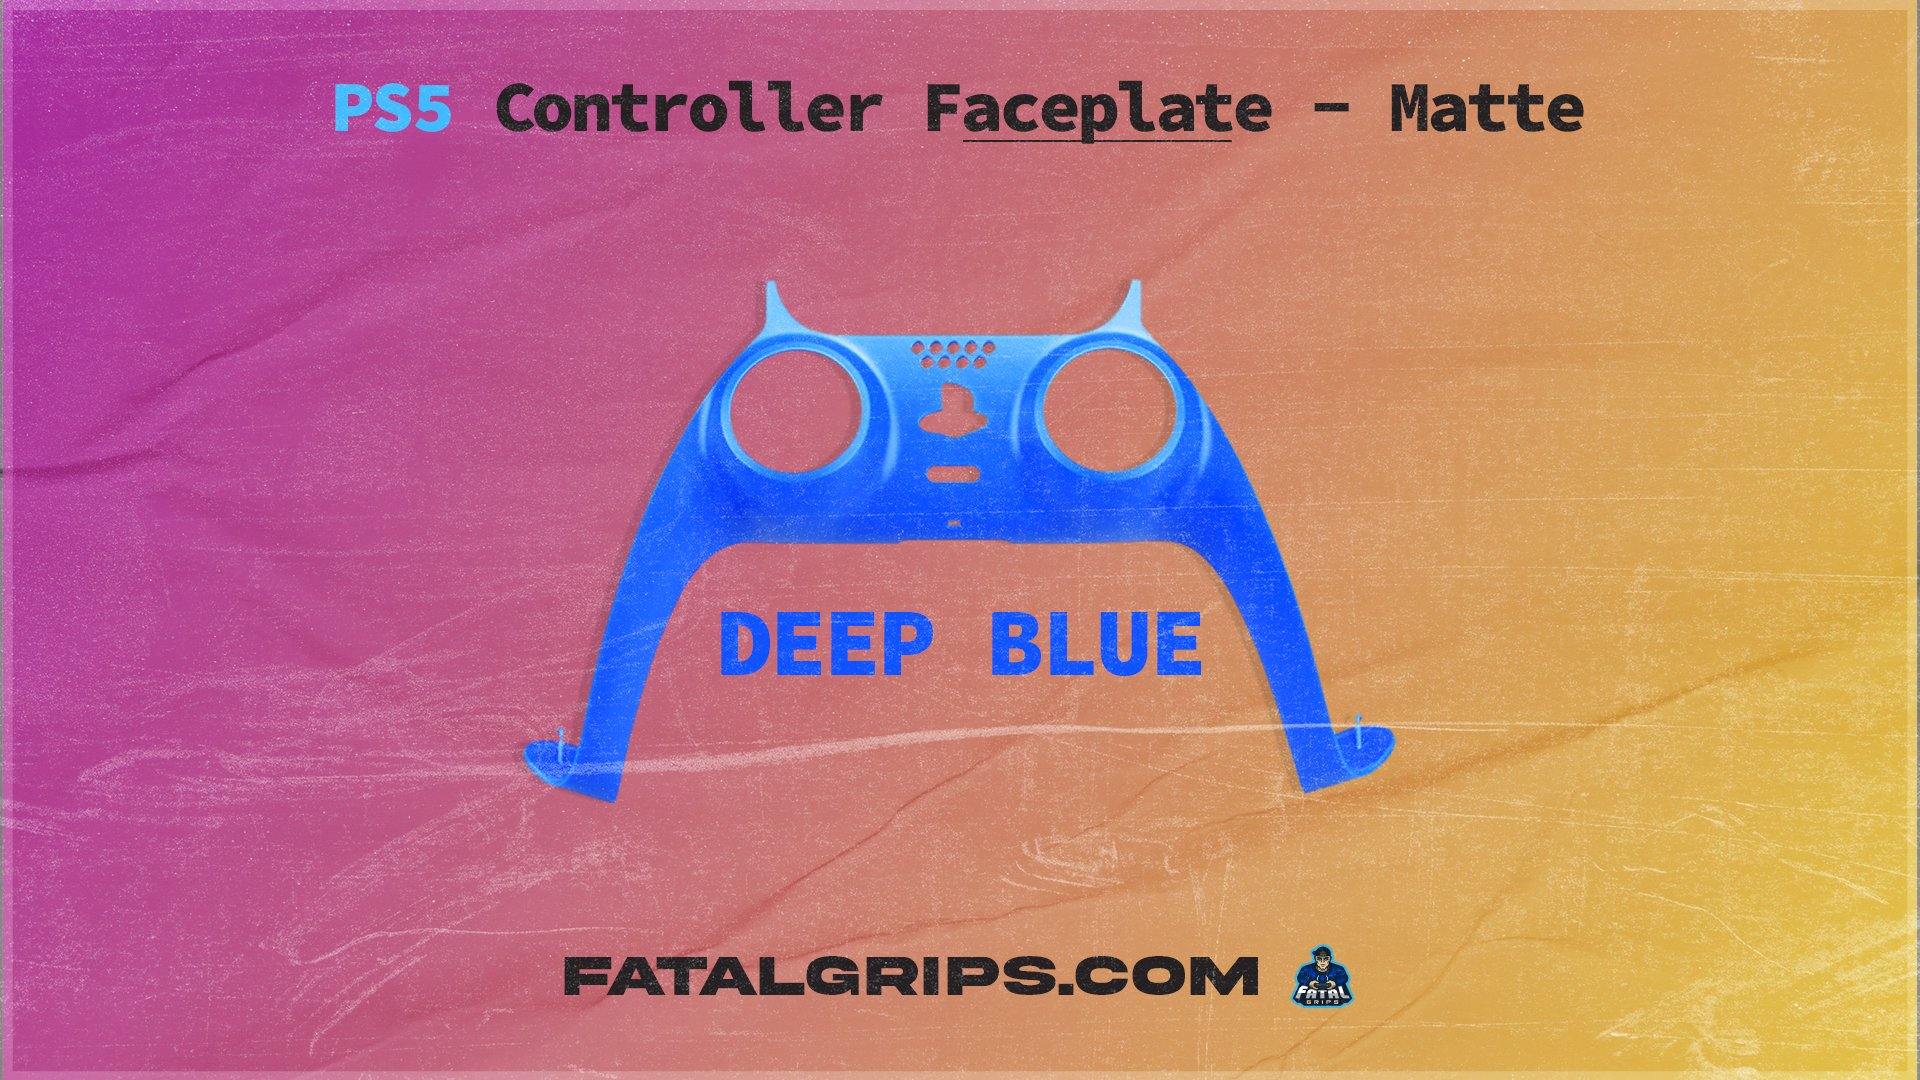 PS5 Controller Faceplate – Matte - Fatal Grips